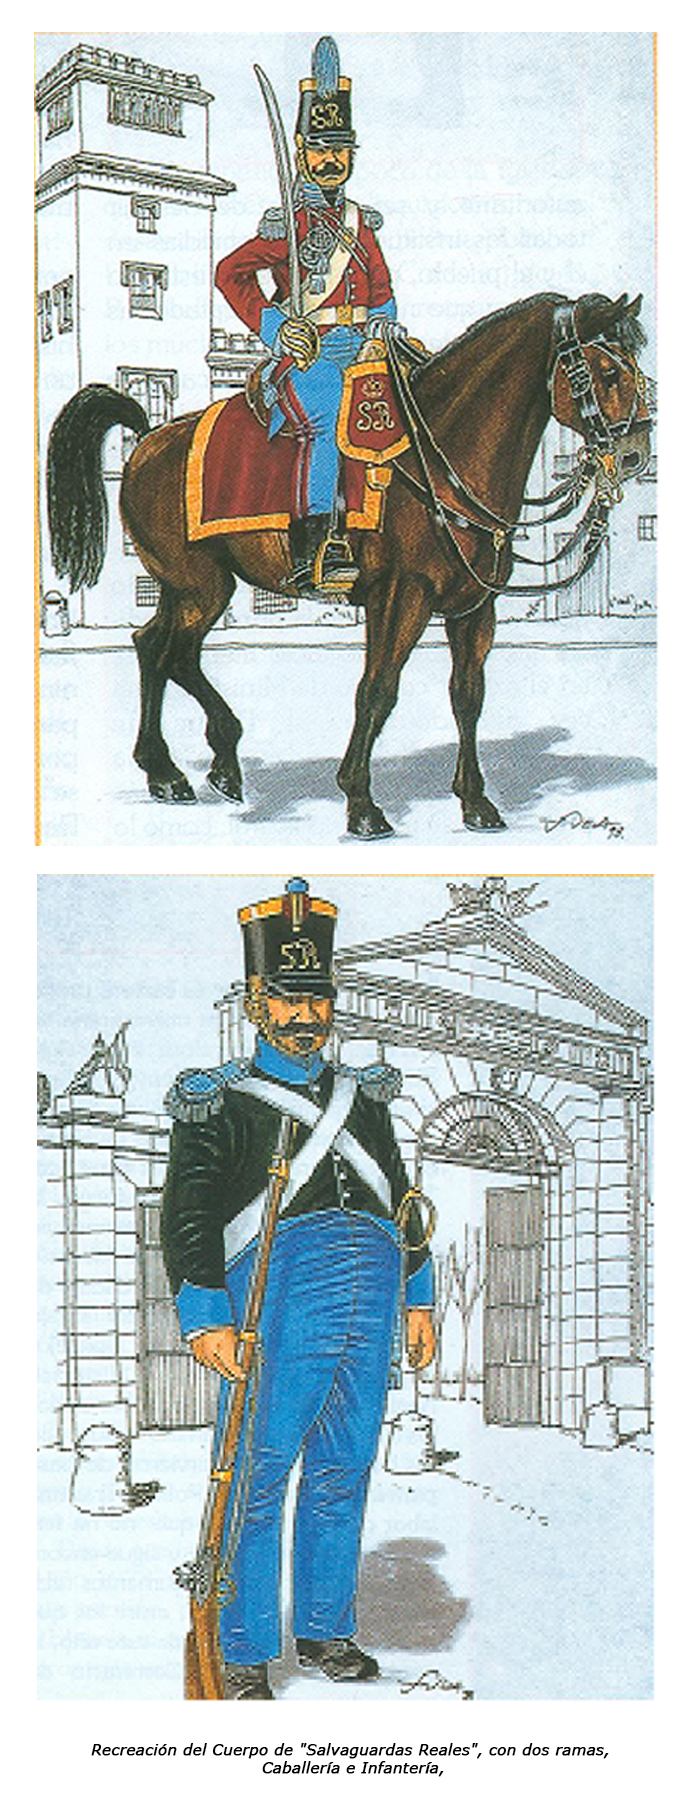 Recreación del Cuerpo de "Salvaguardas Reales", con dos ramas, Caballería e Infantería.